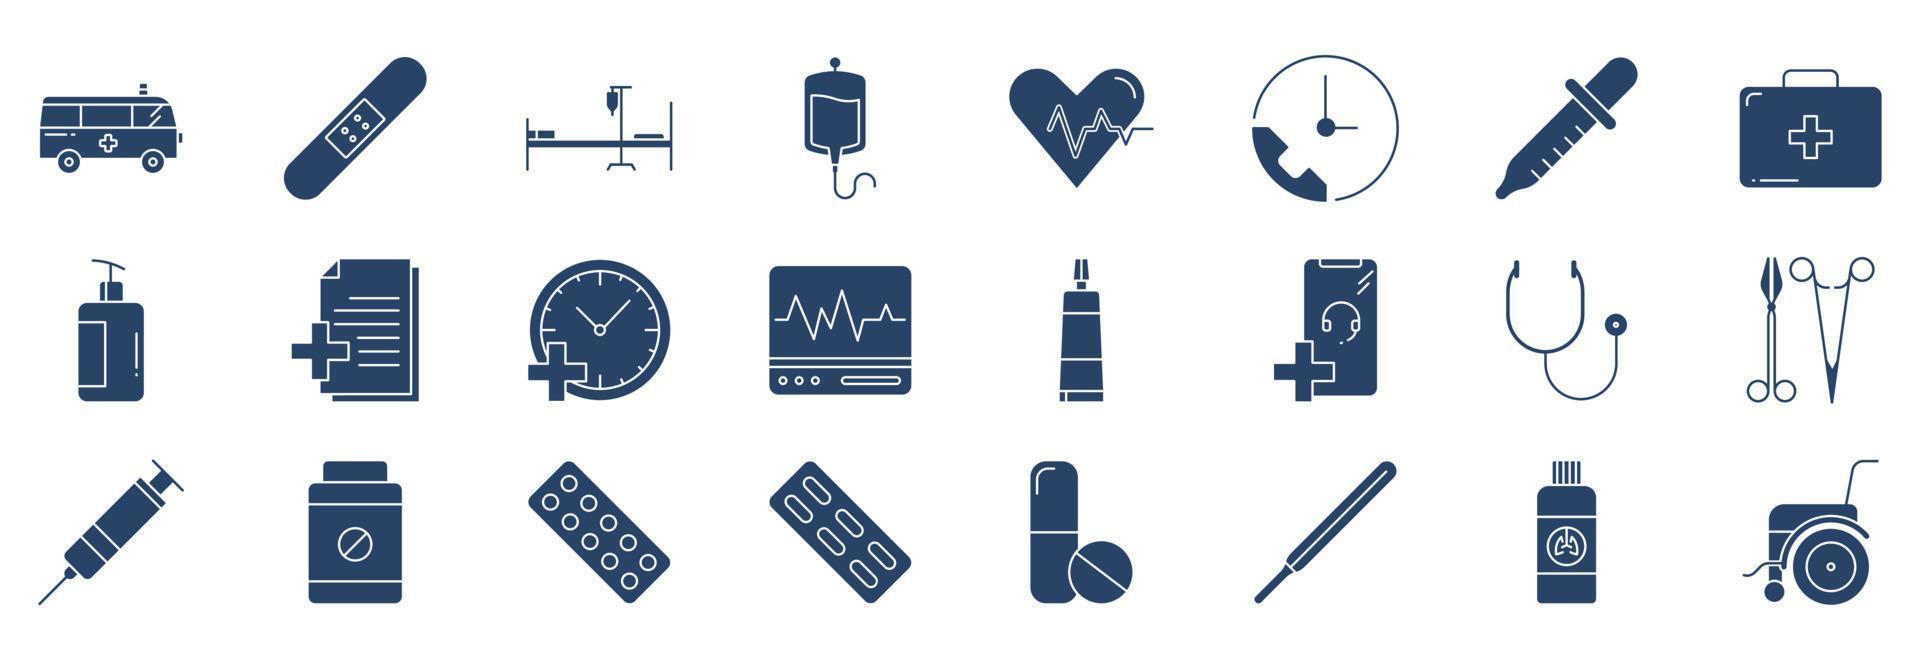 coleção de ícones relacionados ao hospital e médico, incluindo ícones como ambulância, cama, sangue, kit de primeiros socorros e muito mais. ilustrações vetoriais, conjunto perfeito de pixels vetor